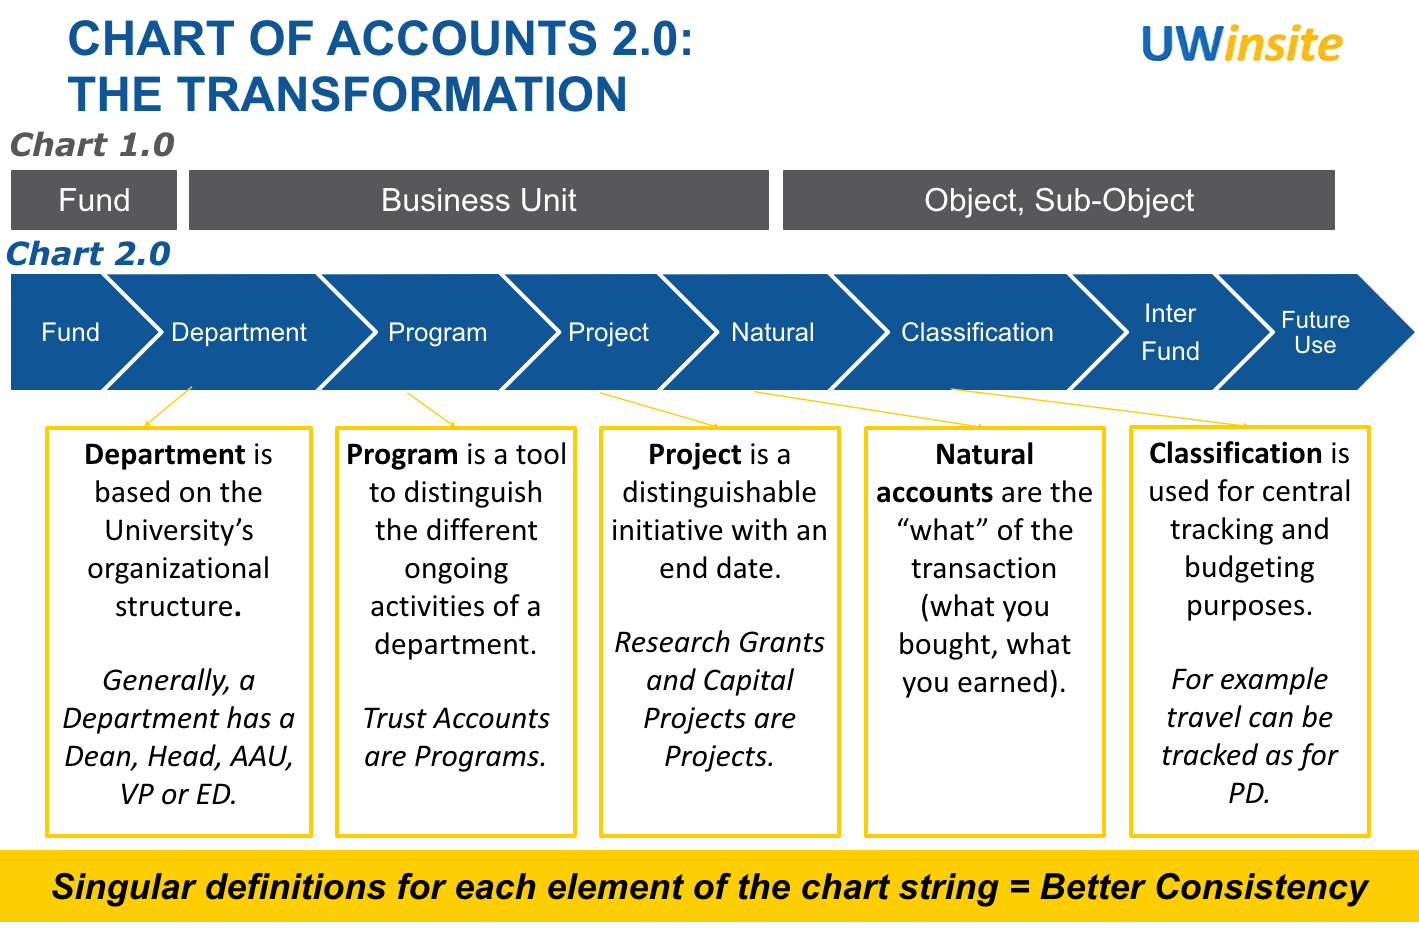 Charter of Accounts structure description